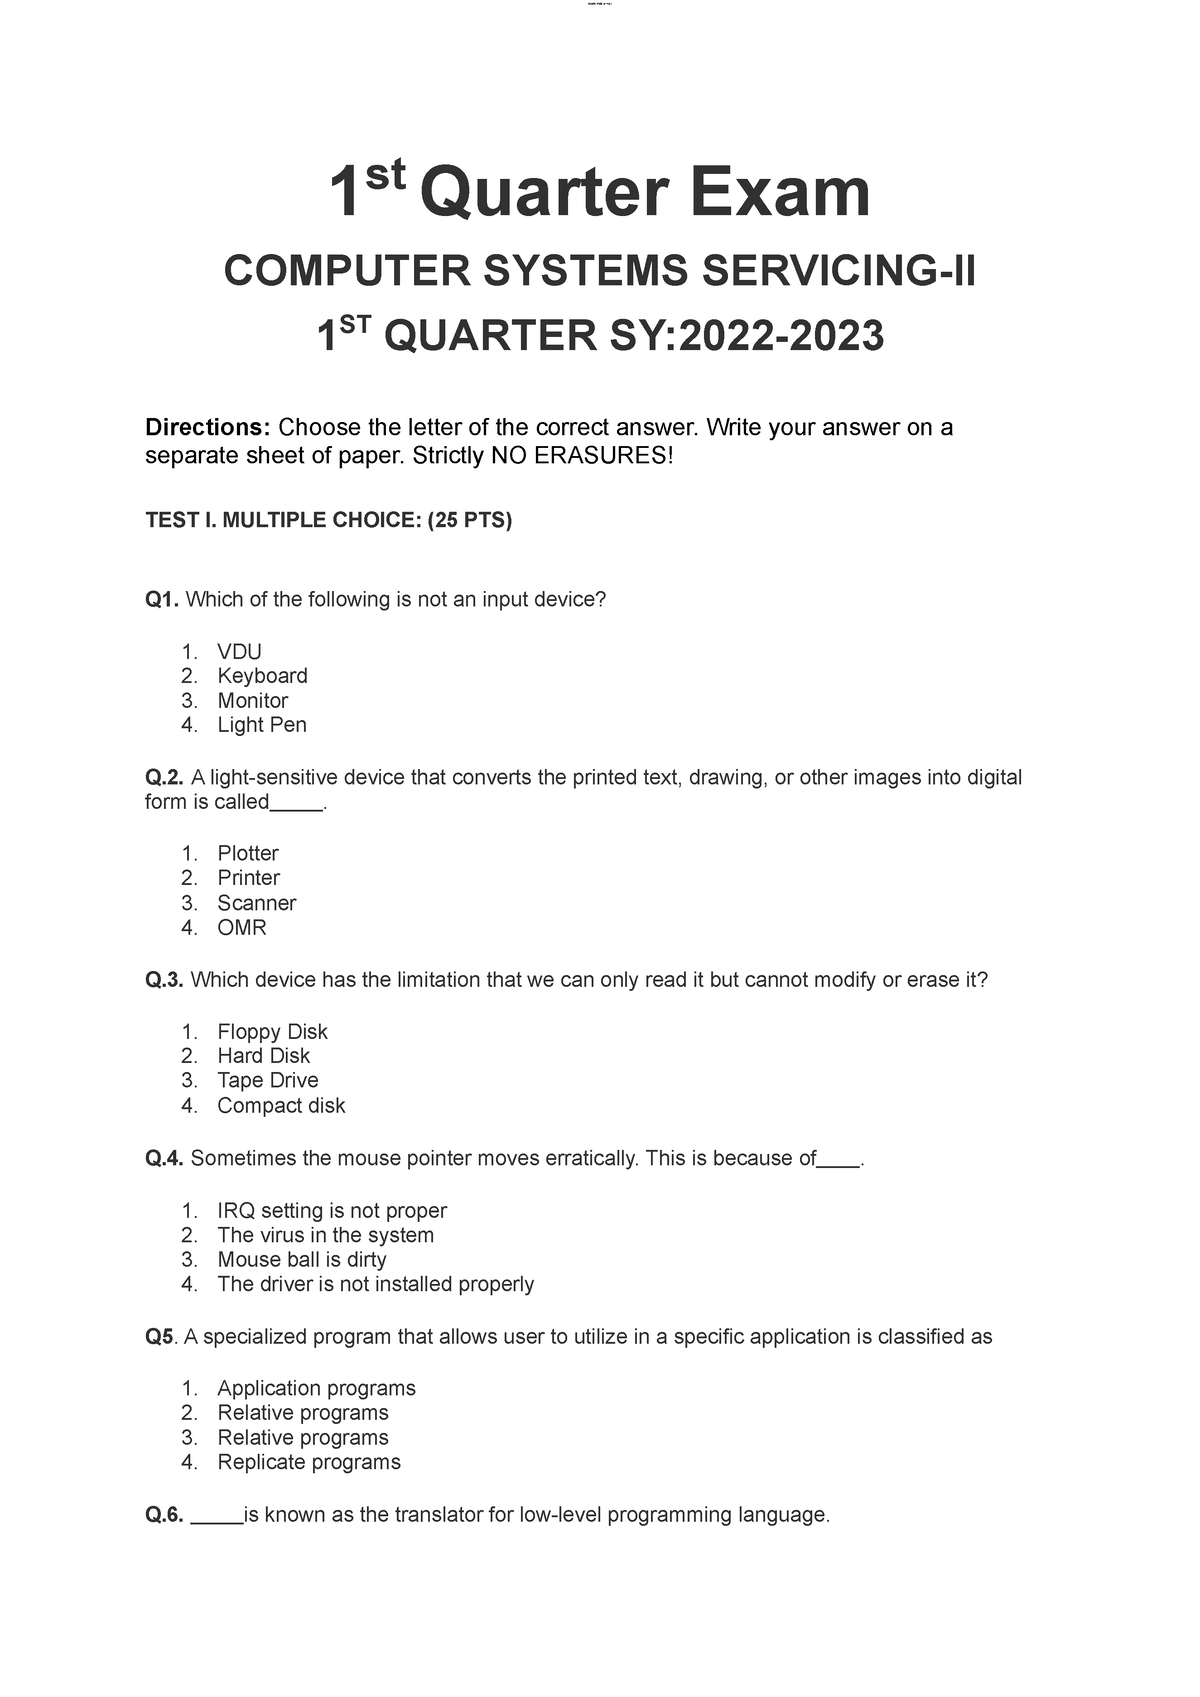 1st Quarter Exam Css G12 Lomoar Cpsd 15474631 1 St Quarter Exam Computer Systems Servicing Ii 2035